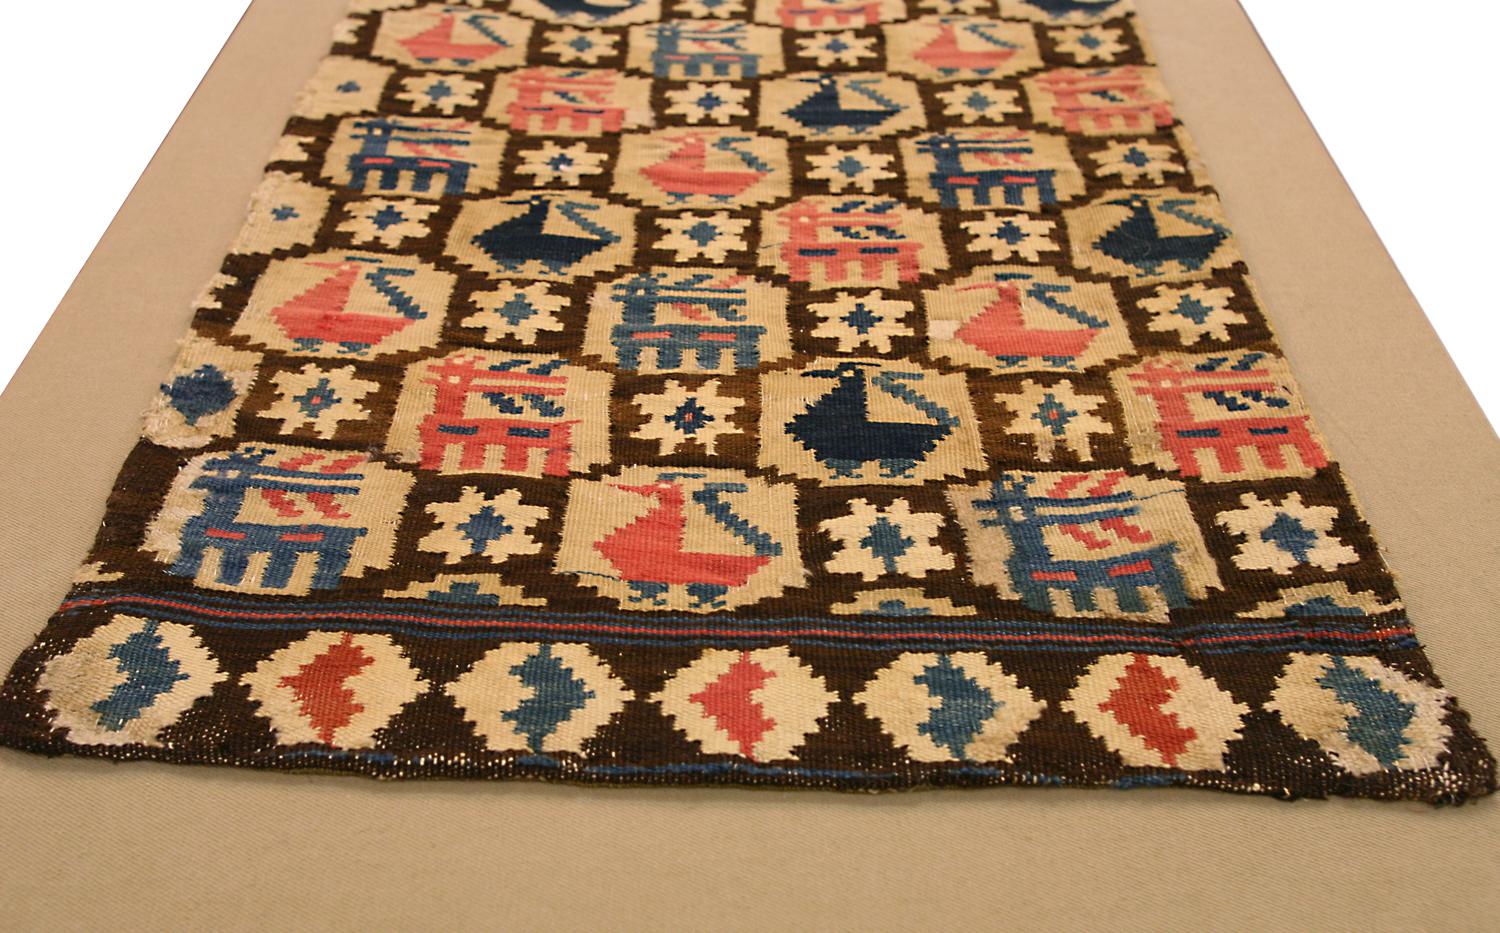 Es handelt sich um ein antikes Rollakan-Textil, das im 19. Jahrhundert in Schweden gewebt wurde und eine Größe von 90 x 47 cm hat. Das Design dieses Stücks besteht aus Reihen von abwechselnd auftretenden Täubchen und Pfauen, die in einem